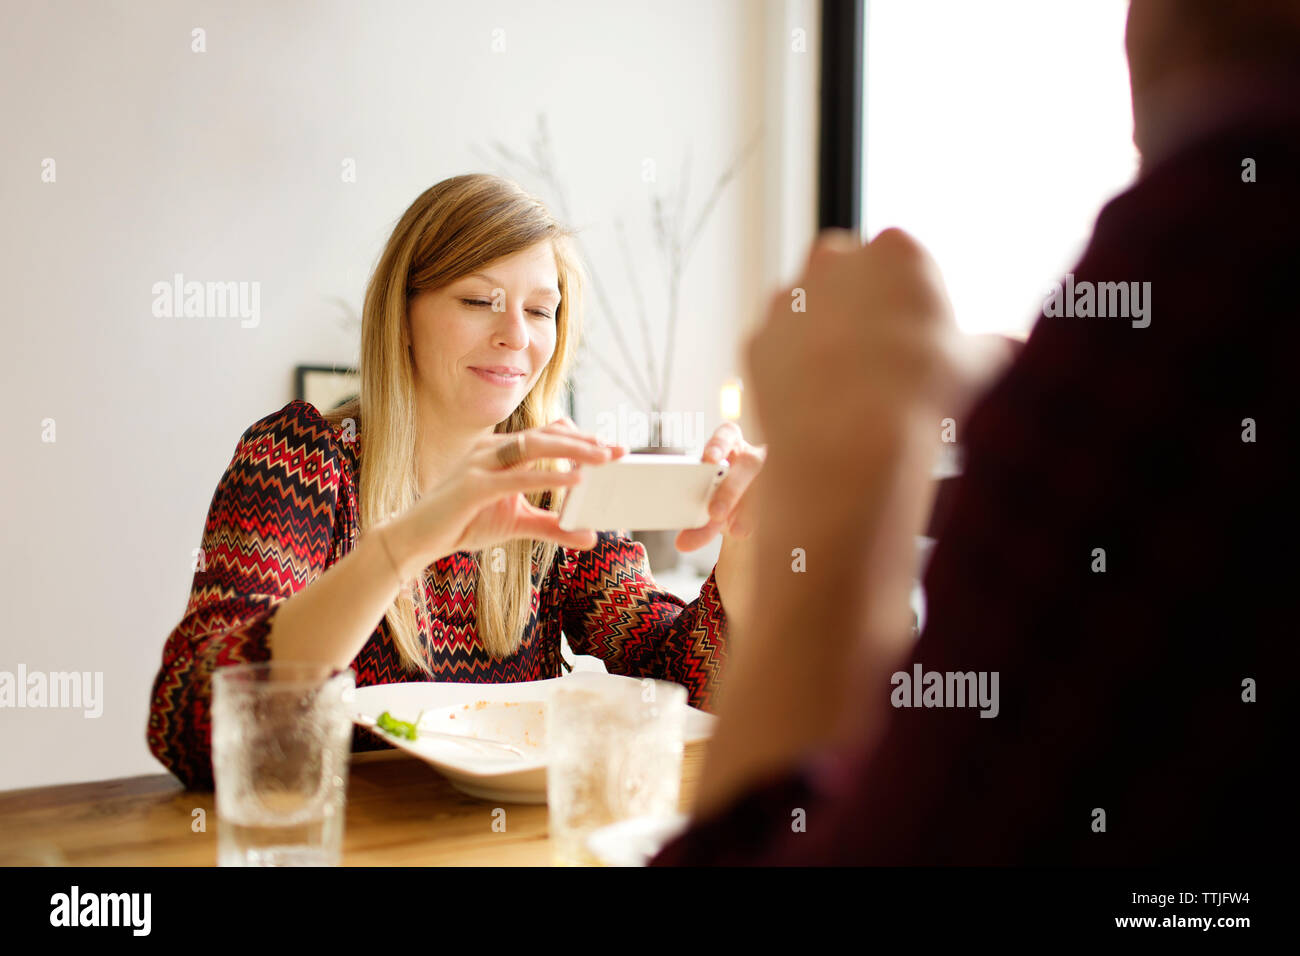 Woman using mobile phone while sitting par l'homme à table à manger dans la maison Banque D'Images